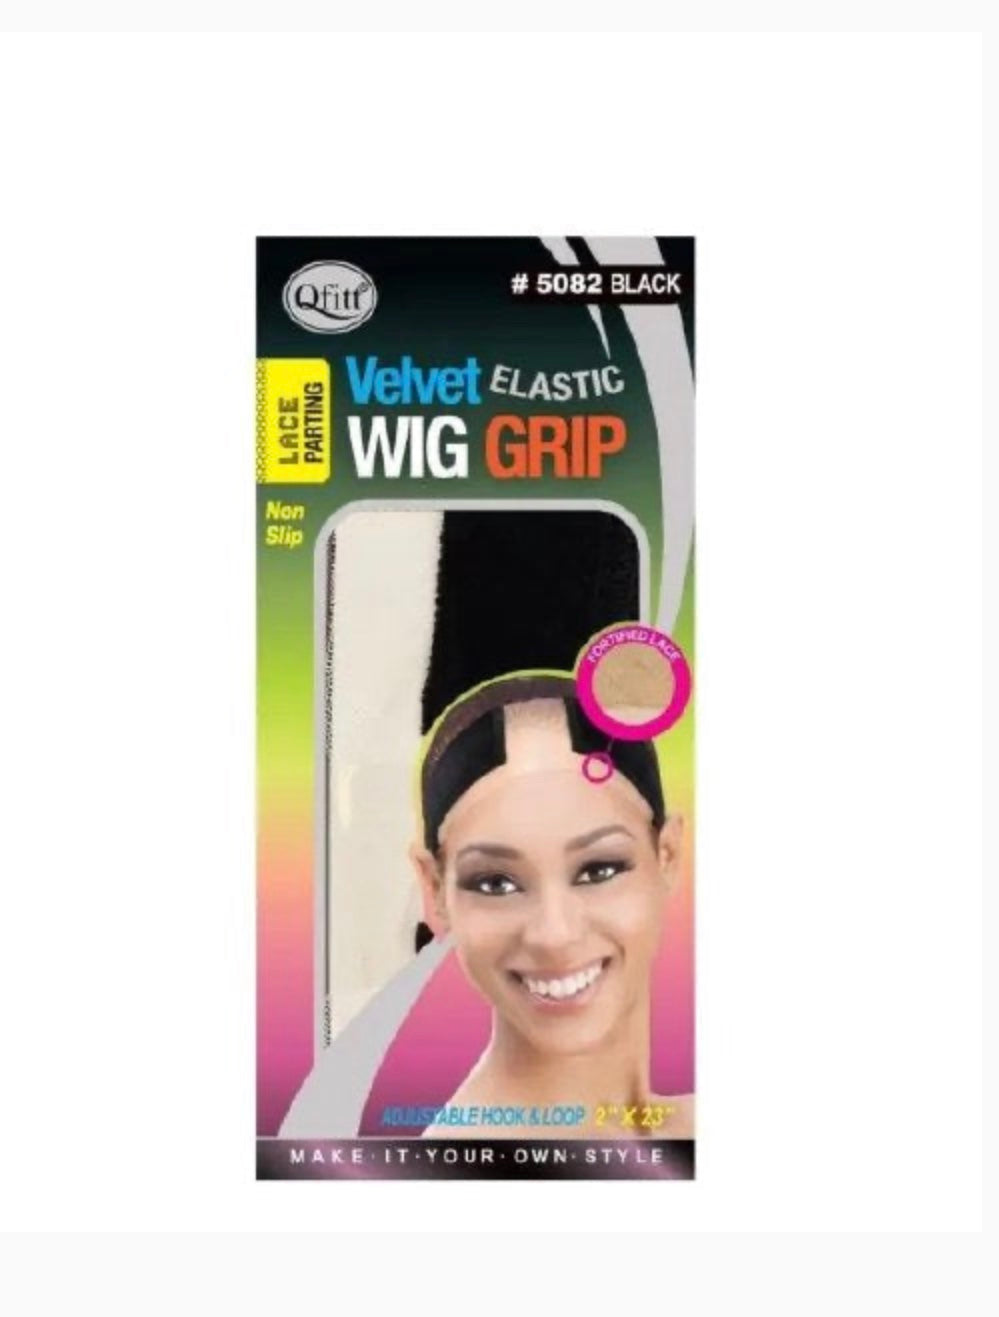 Velvet elastic Wig Grip - Tam's Beauty Supply 